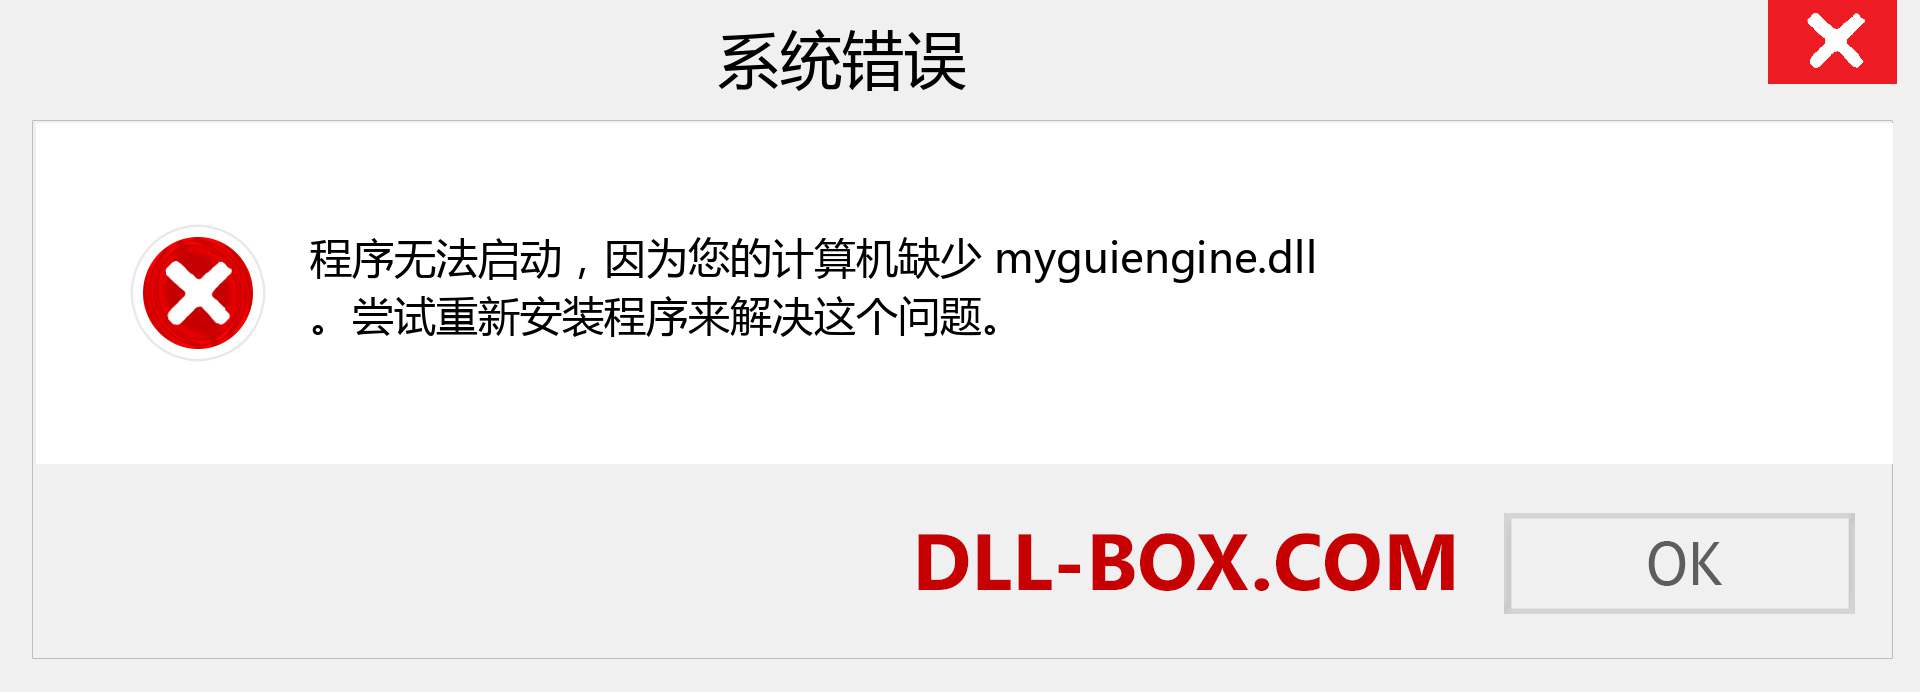 myguiengine.dll 文件丢失？。 适用于 Windows 7、8、10 的下载 - 修复 Windows、照片、图像上的 myguiengine dll 丢失错误